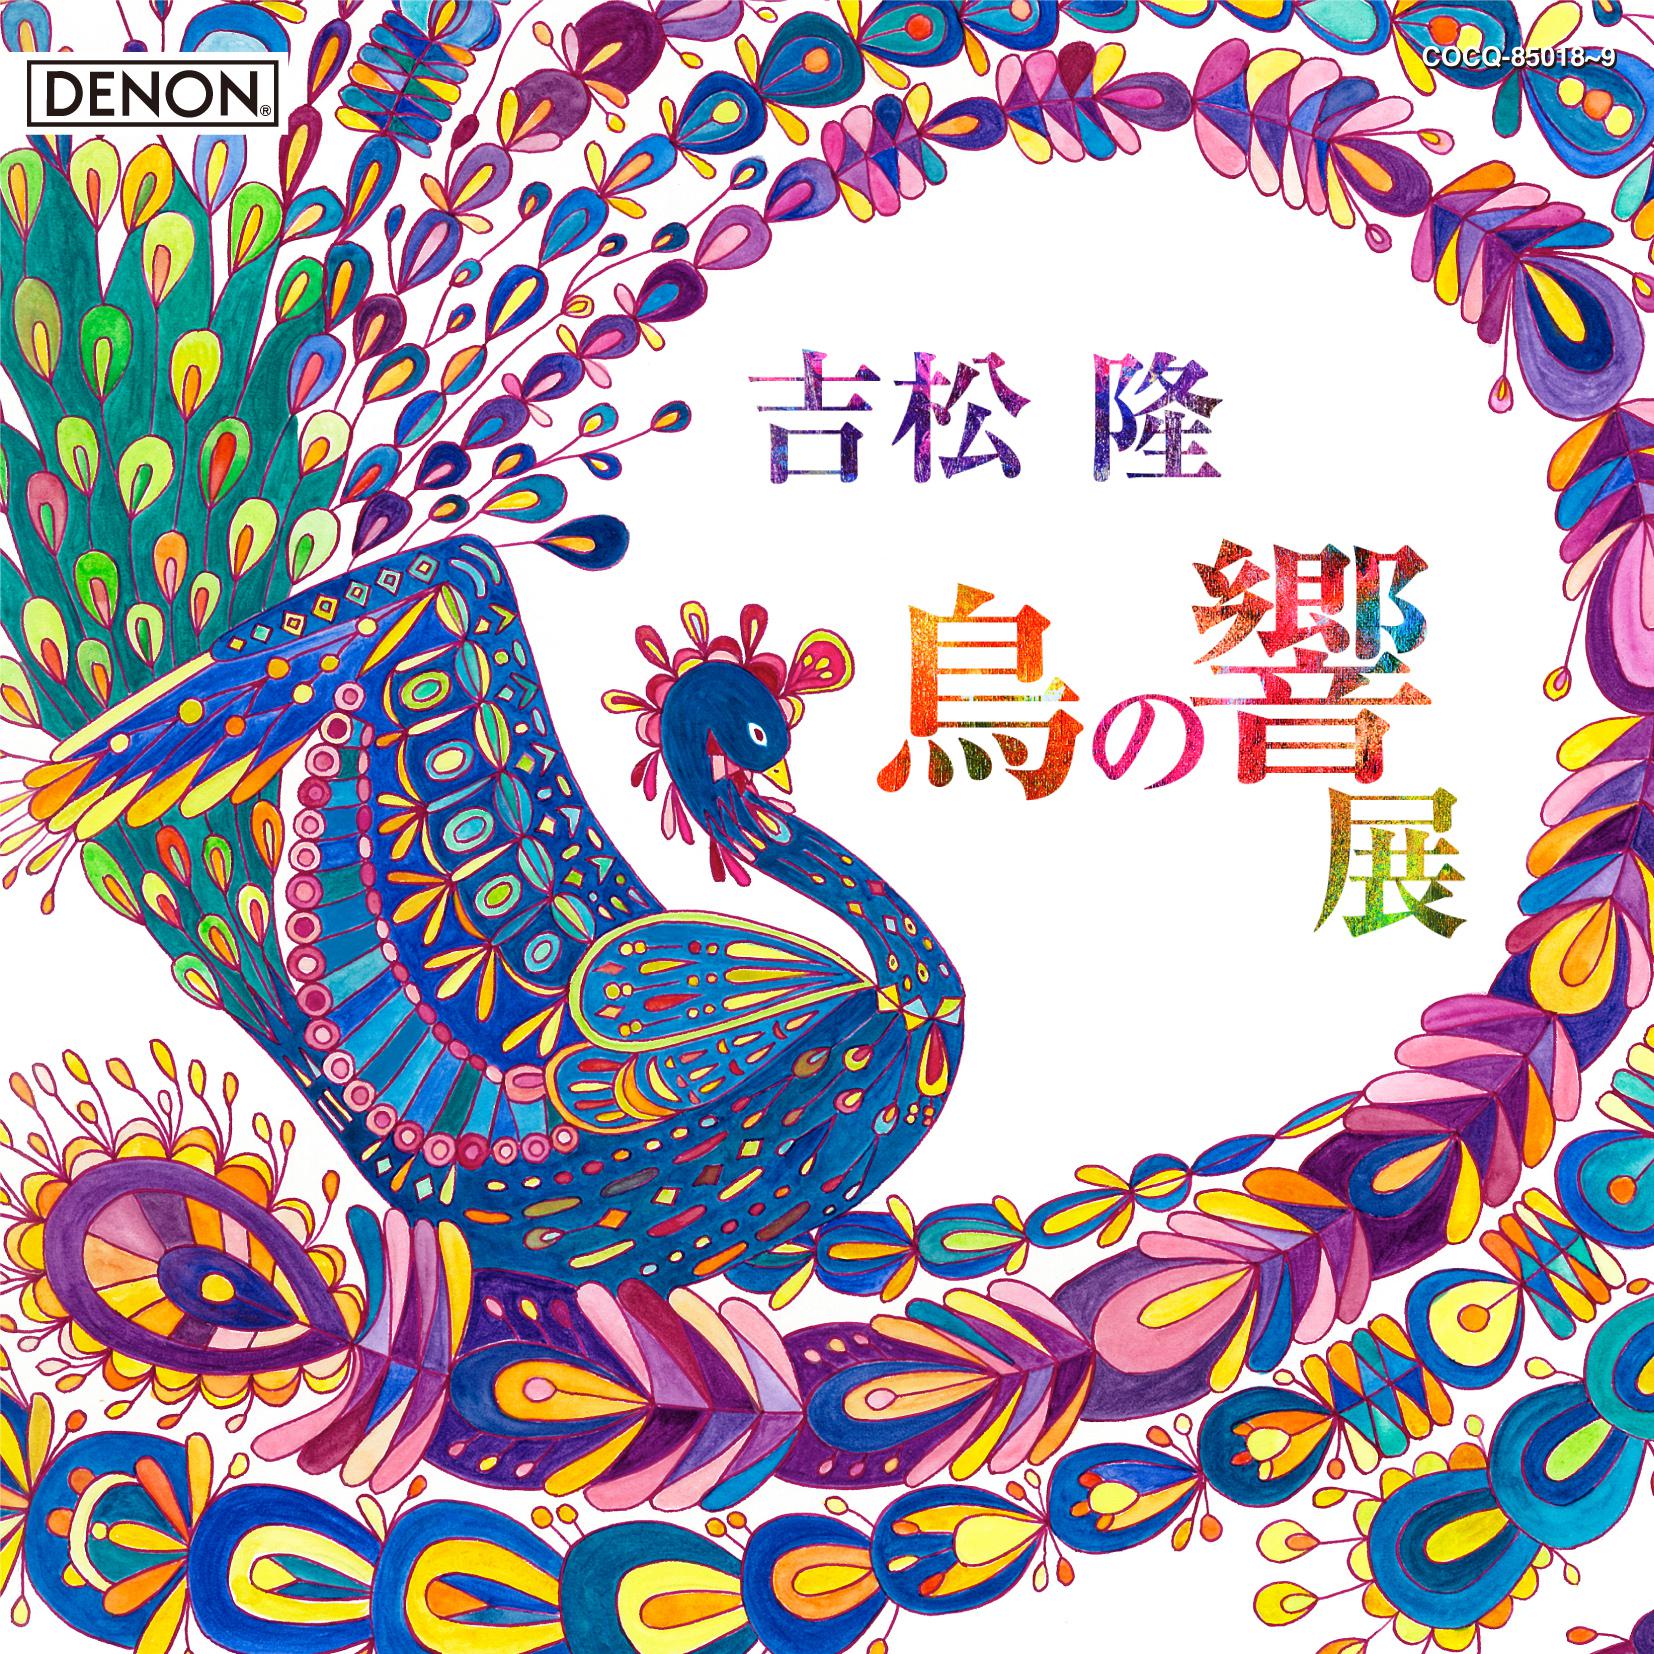 須川展也 - サクソフォン協奏曲「サイバーバード」 op. 59 (1994) I- 彩の鳥